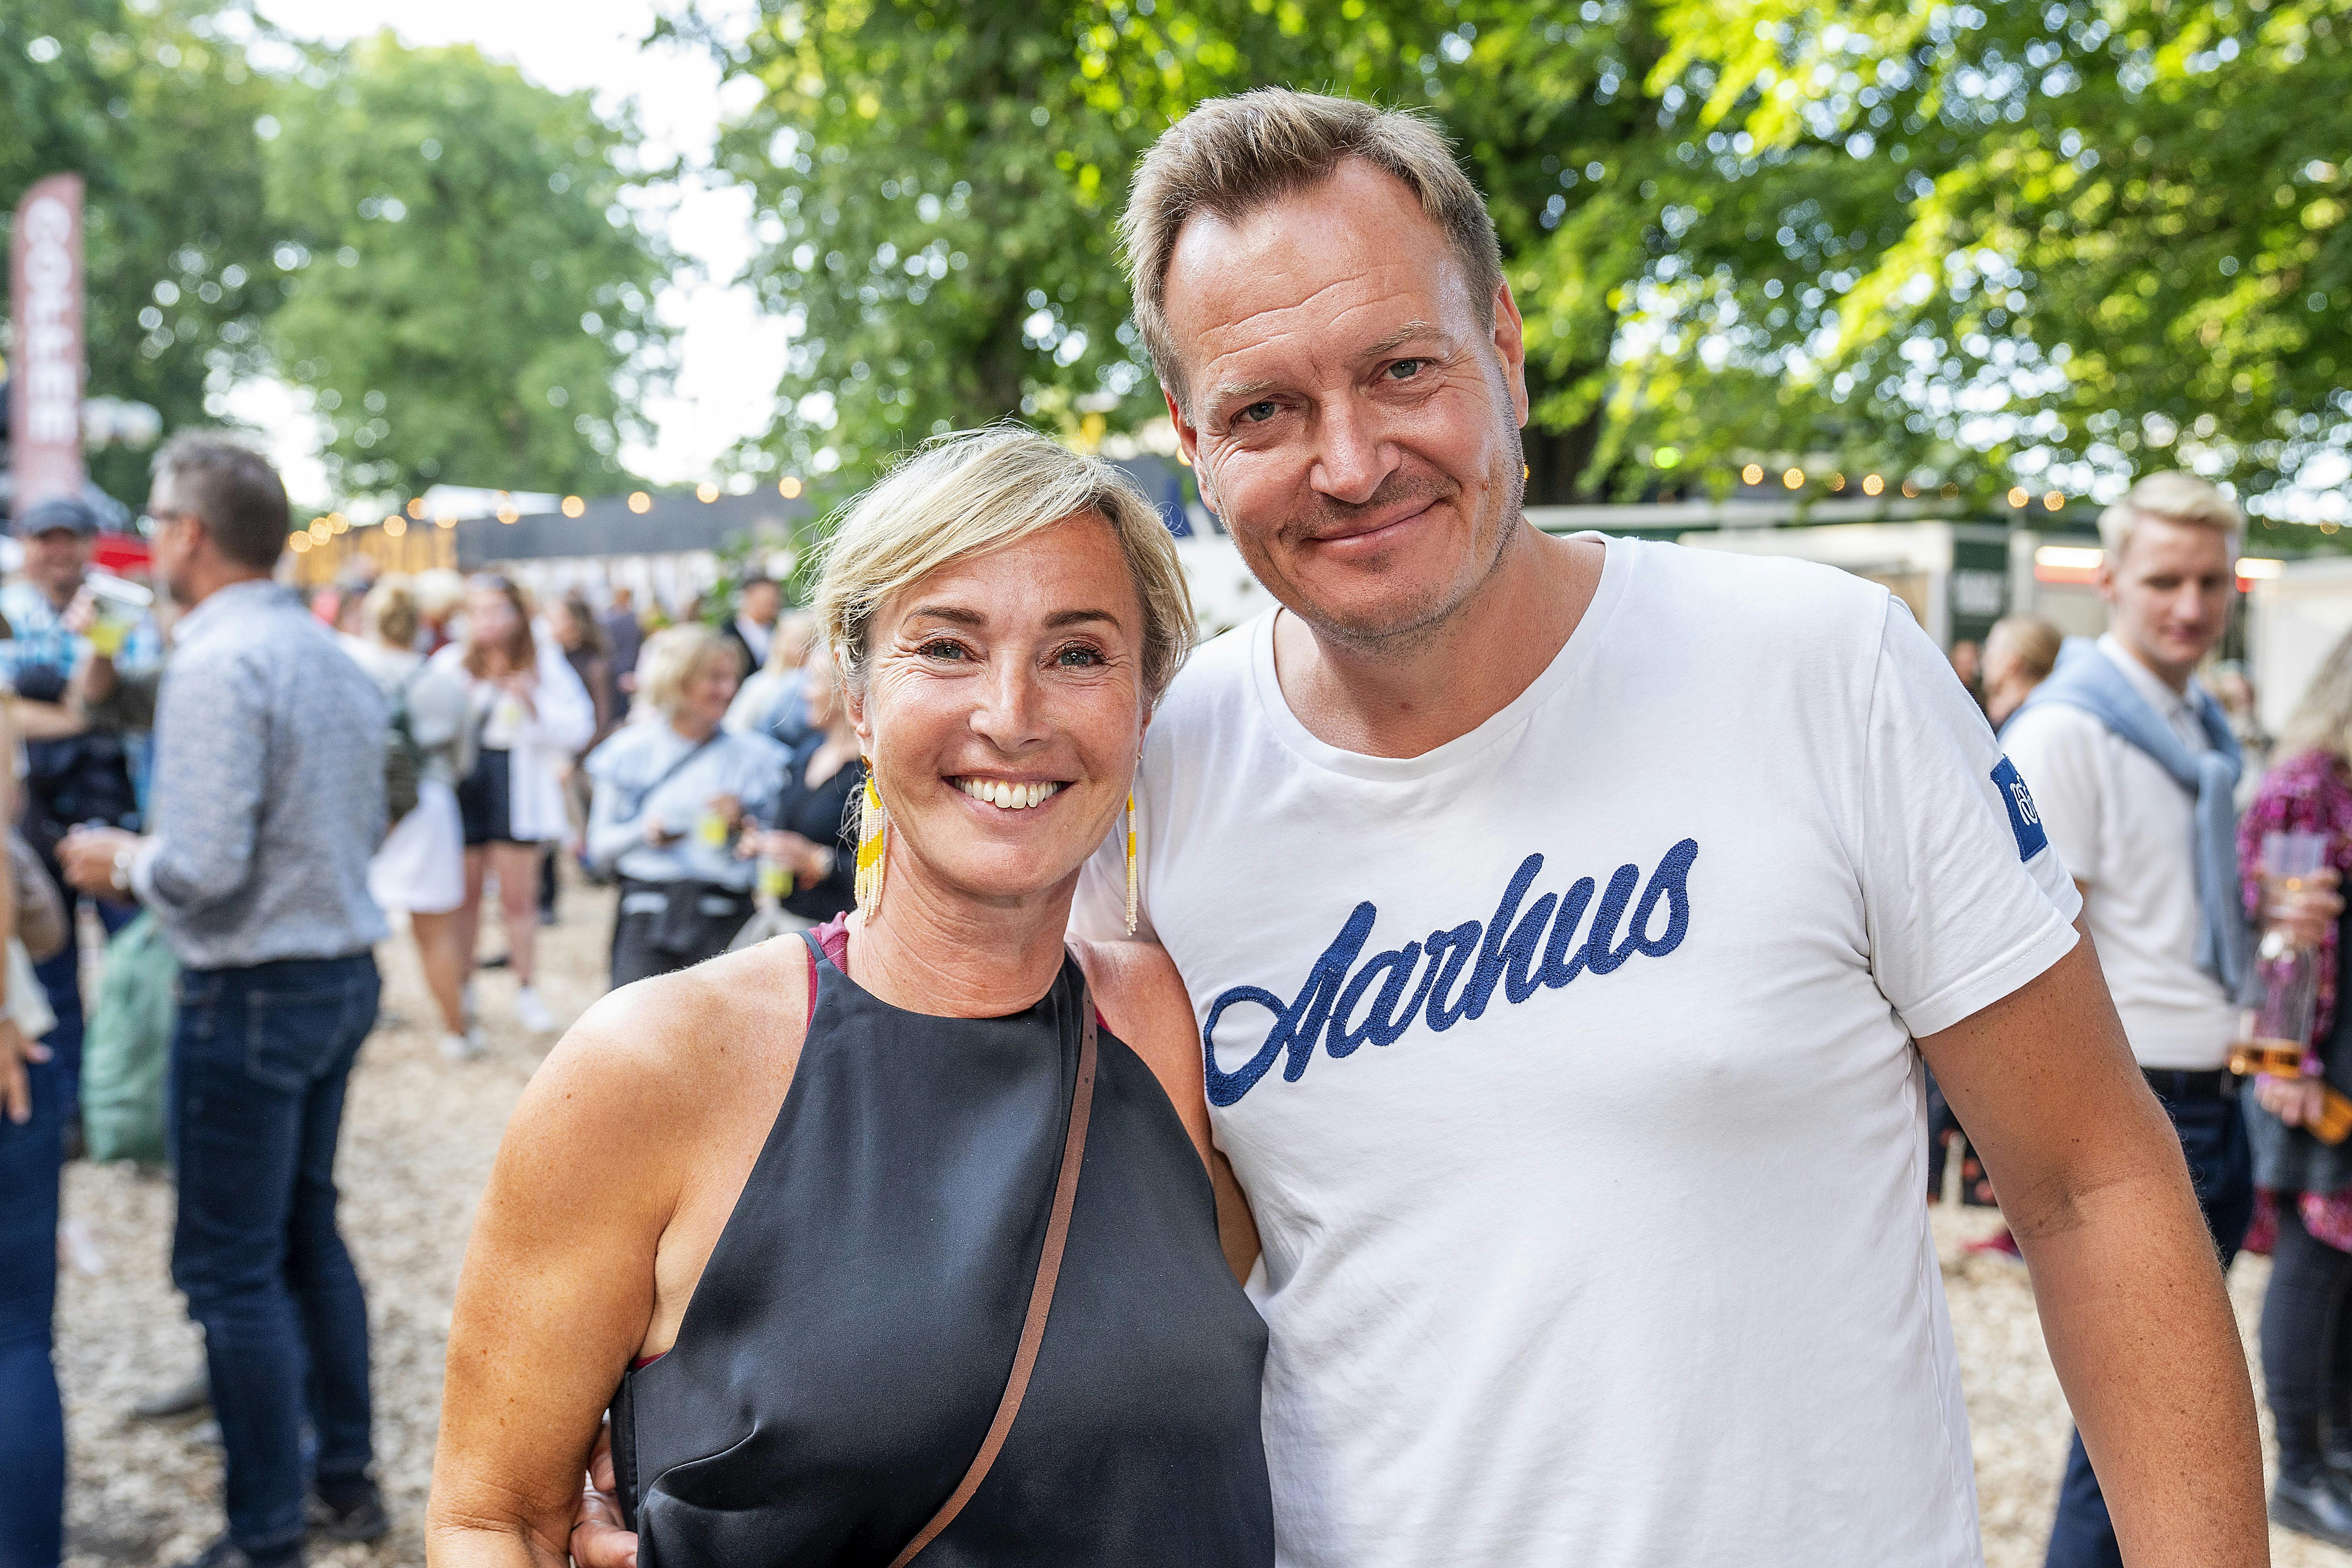 Rasmus Tantholdt og Natasja Crone fortalte på Smukfest, at de skulle giftes, men at de ikke vidste hvornår eller hvordan. Nu er det sket.